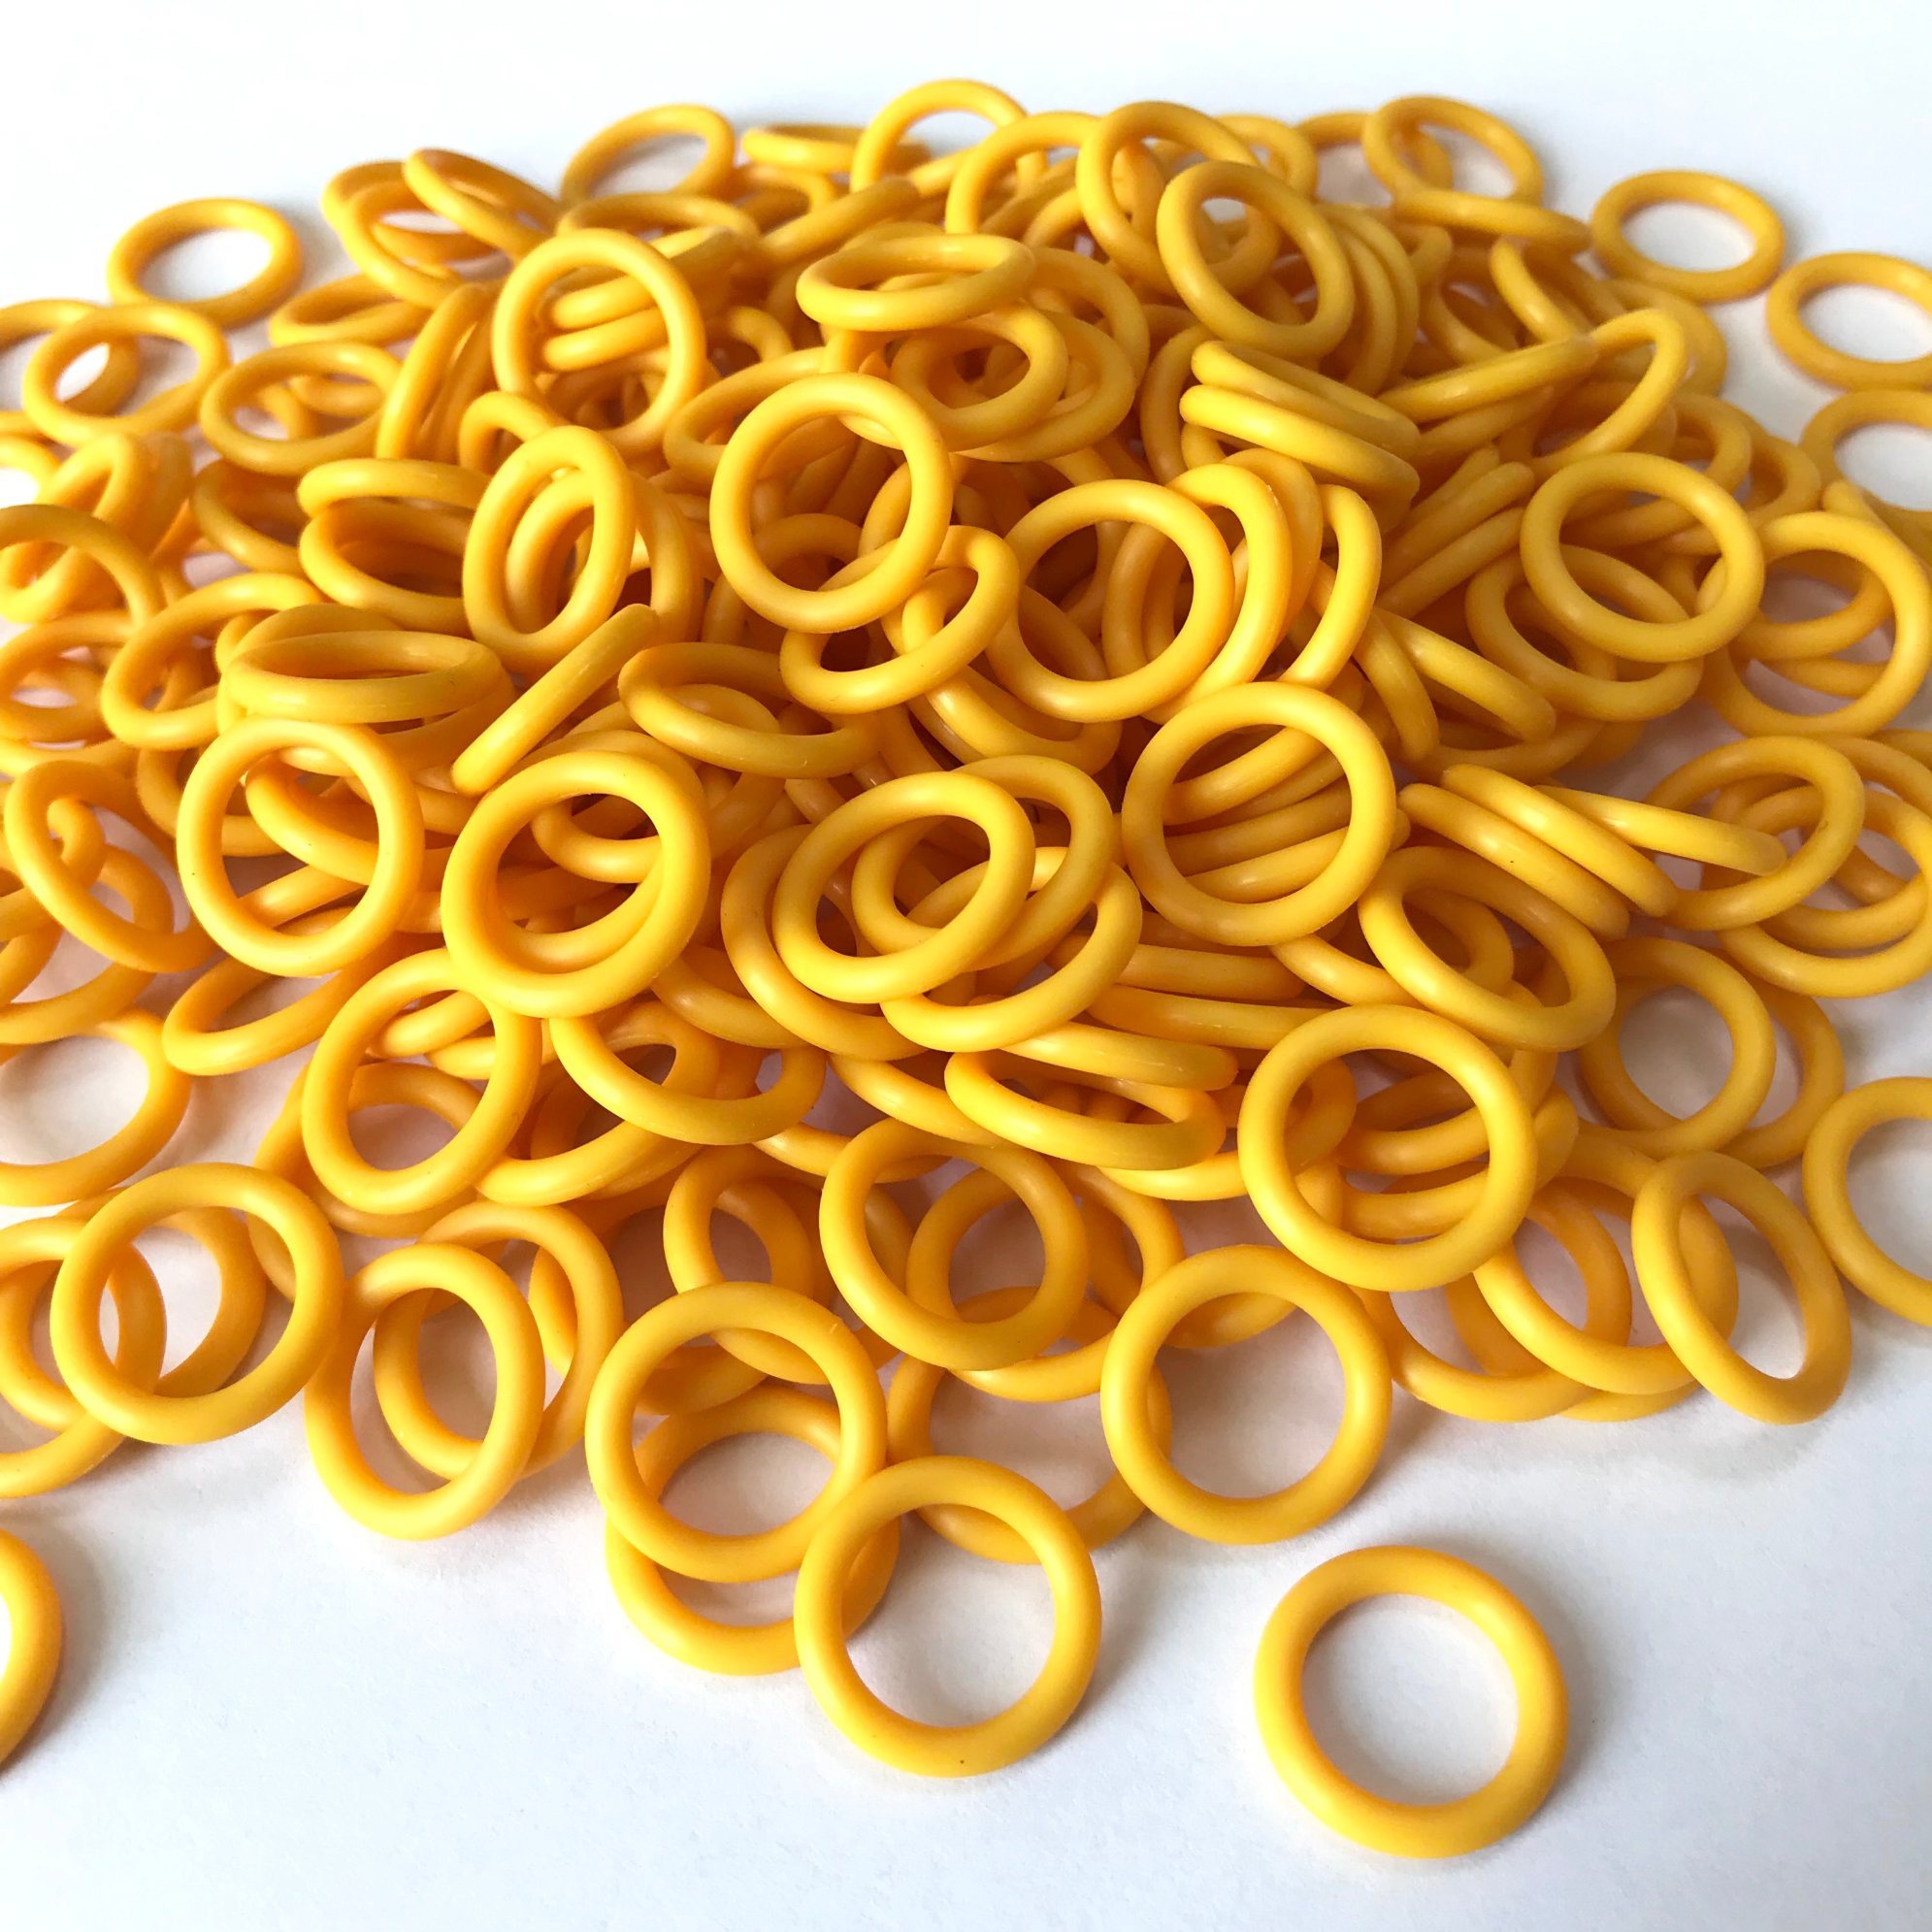 FDA Grade Toys Seal Yellow Sil Rubbeer O-Ring